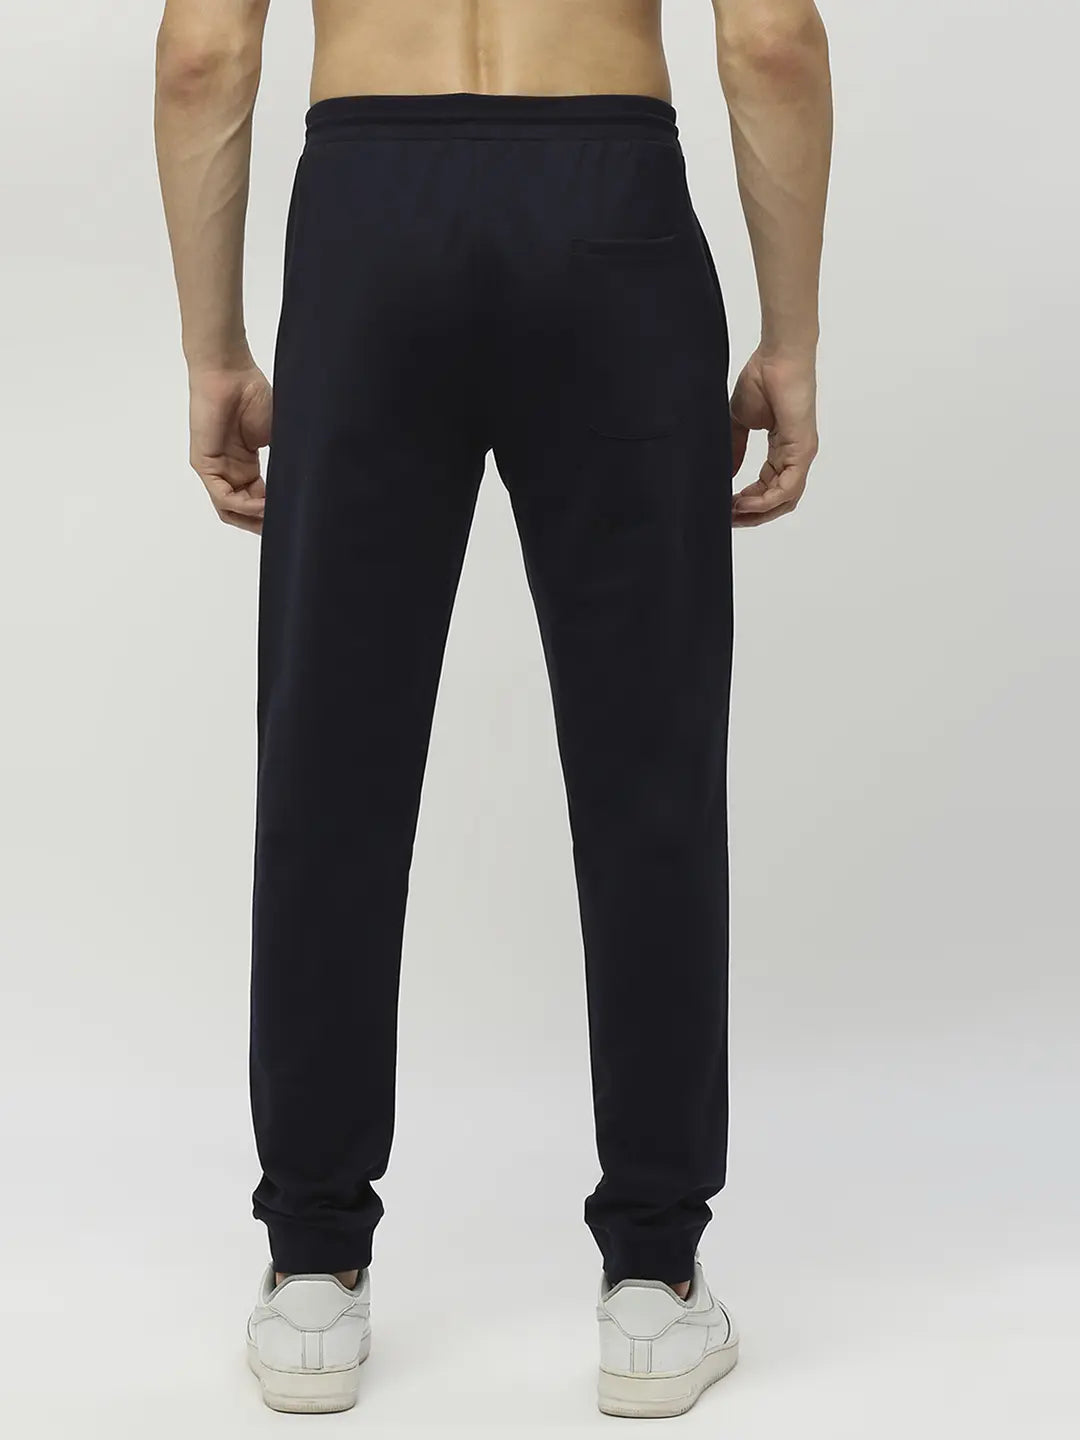 SLOCOG'S | Fendi logo-patch track pants | Levi's Women's 501 Original Fit  Distressed Jeans $ 79.5